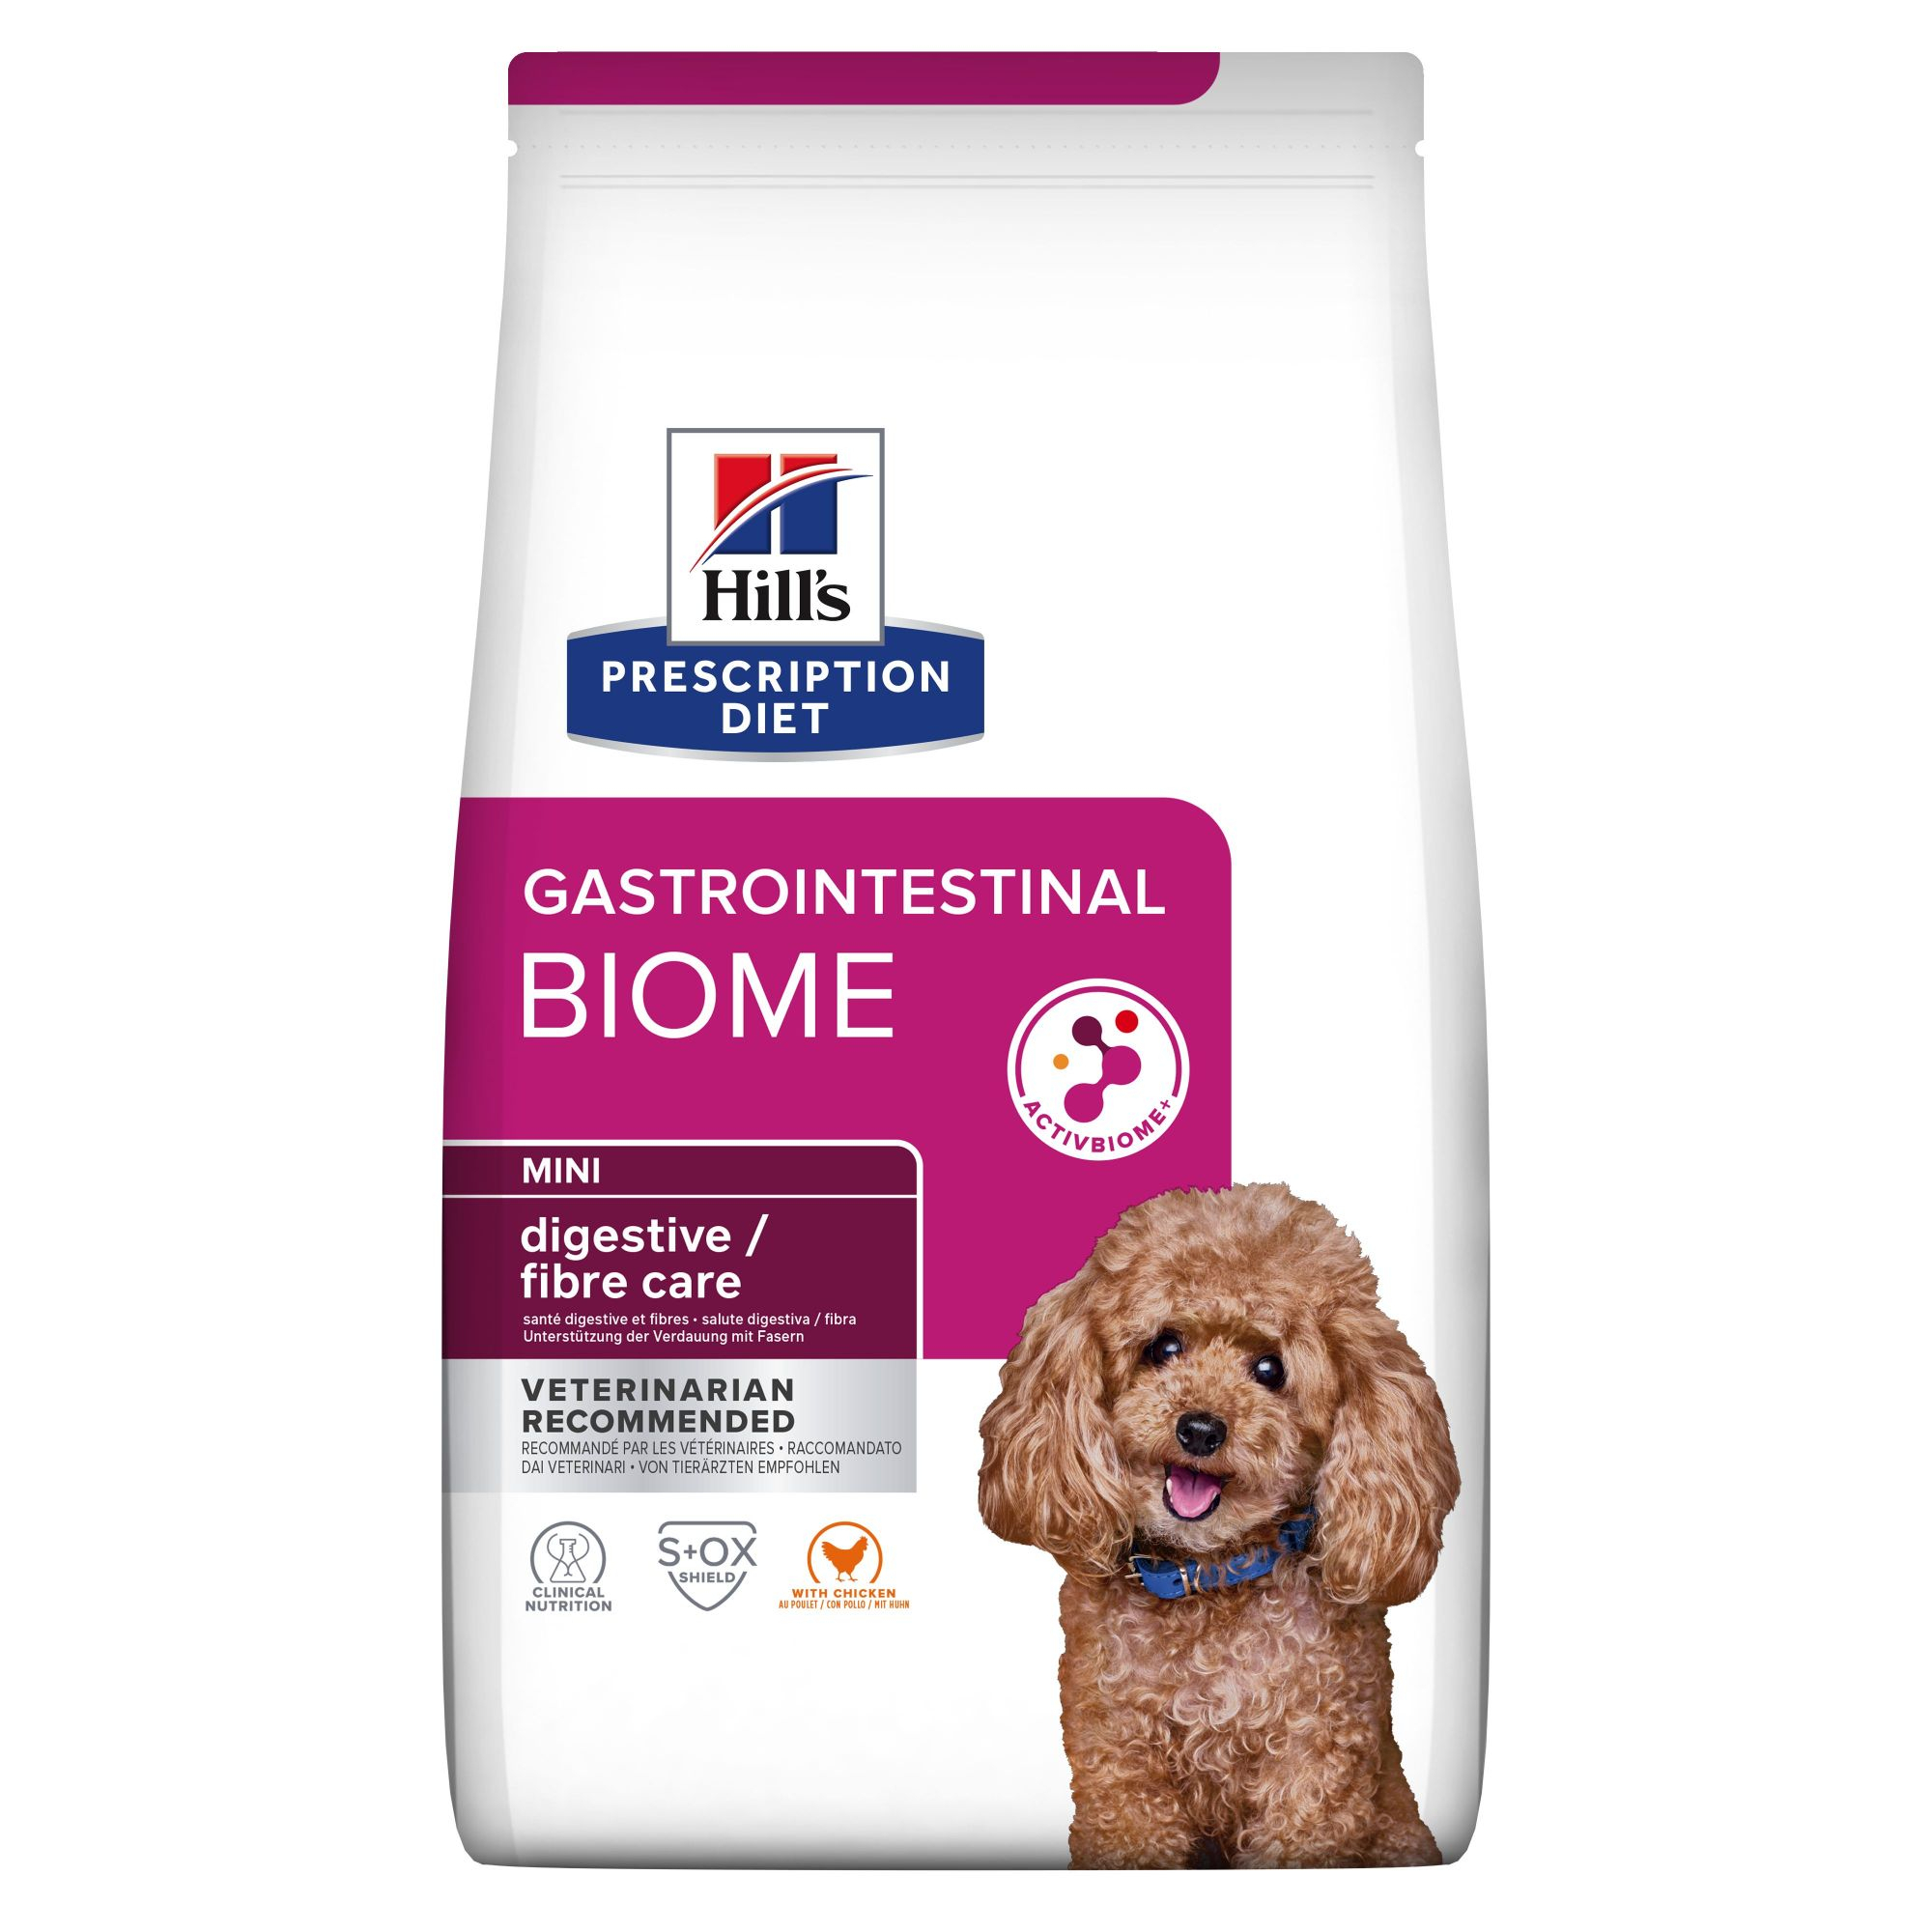 Hill's Prescription Diet Gastrointestinal Biome Mini pienso para perros